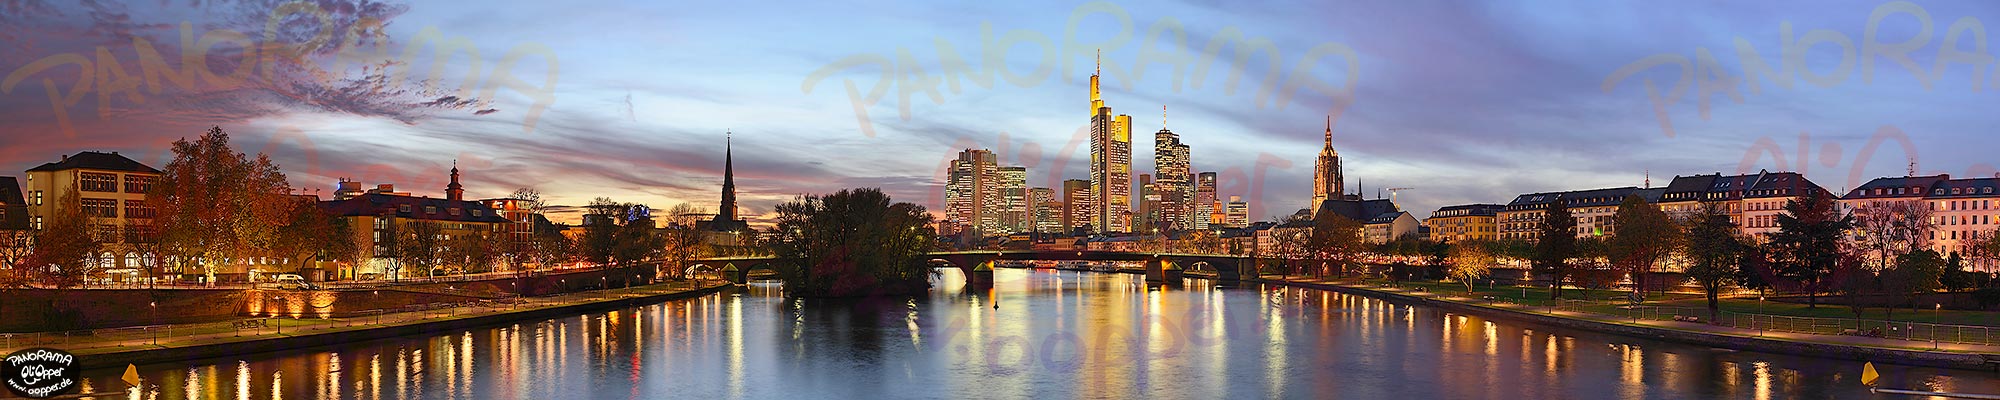 Panorama Frankfurt - Skyline zur blauen Stunde - p147 - (c) by Oliver Opper